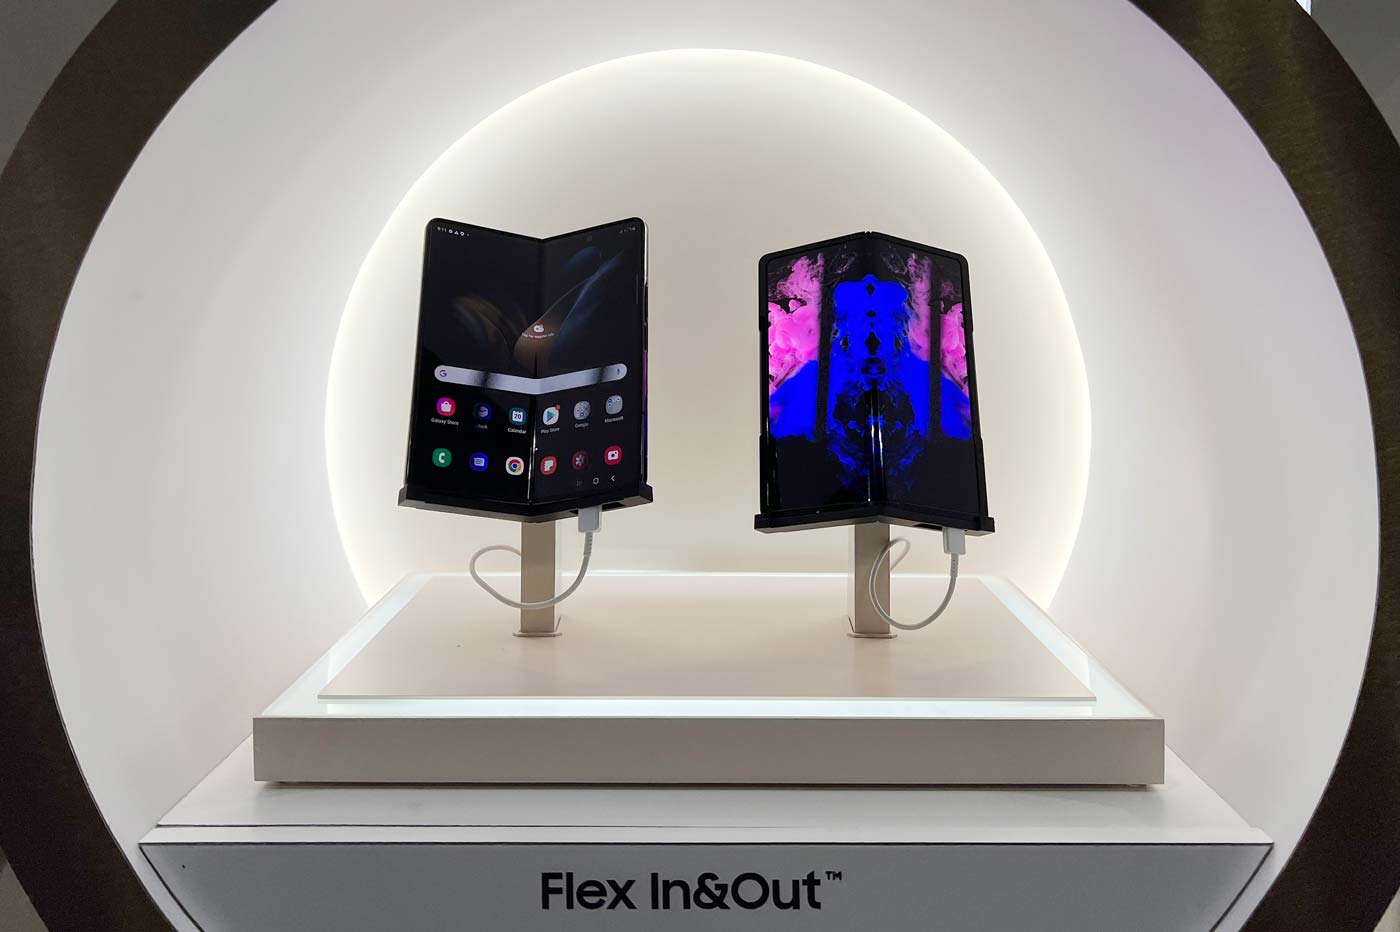 Samsung Flex In & Out